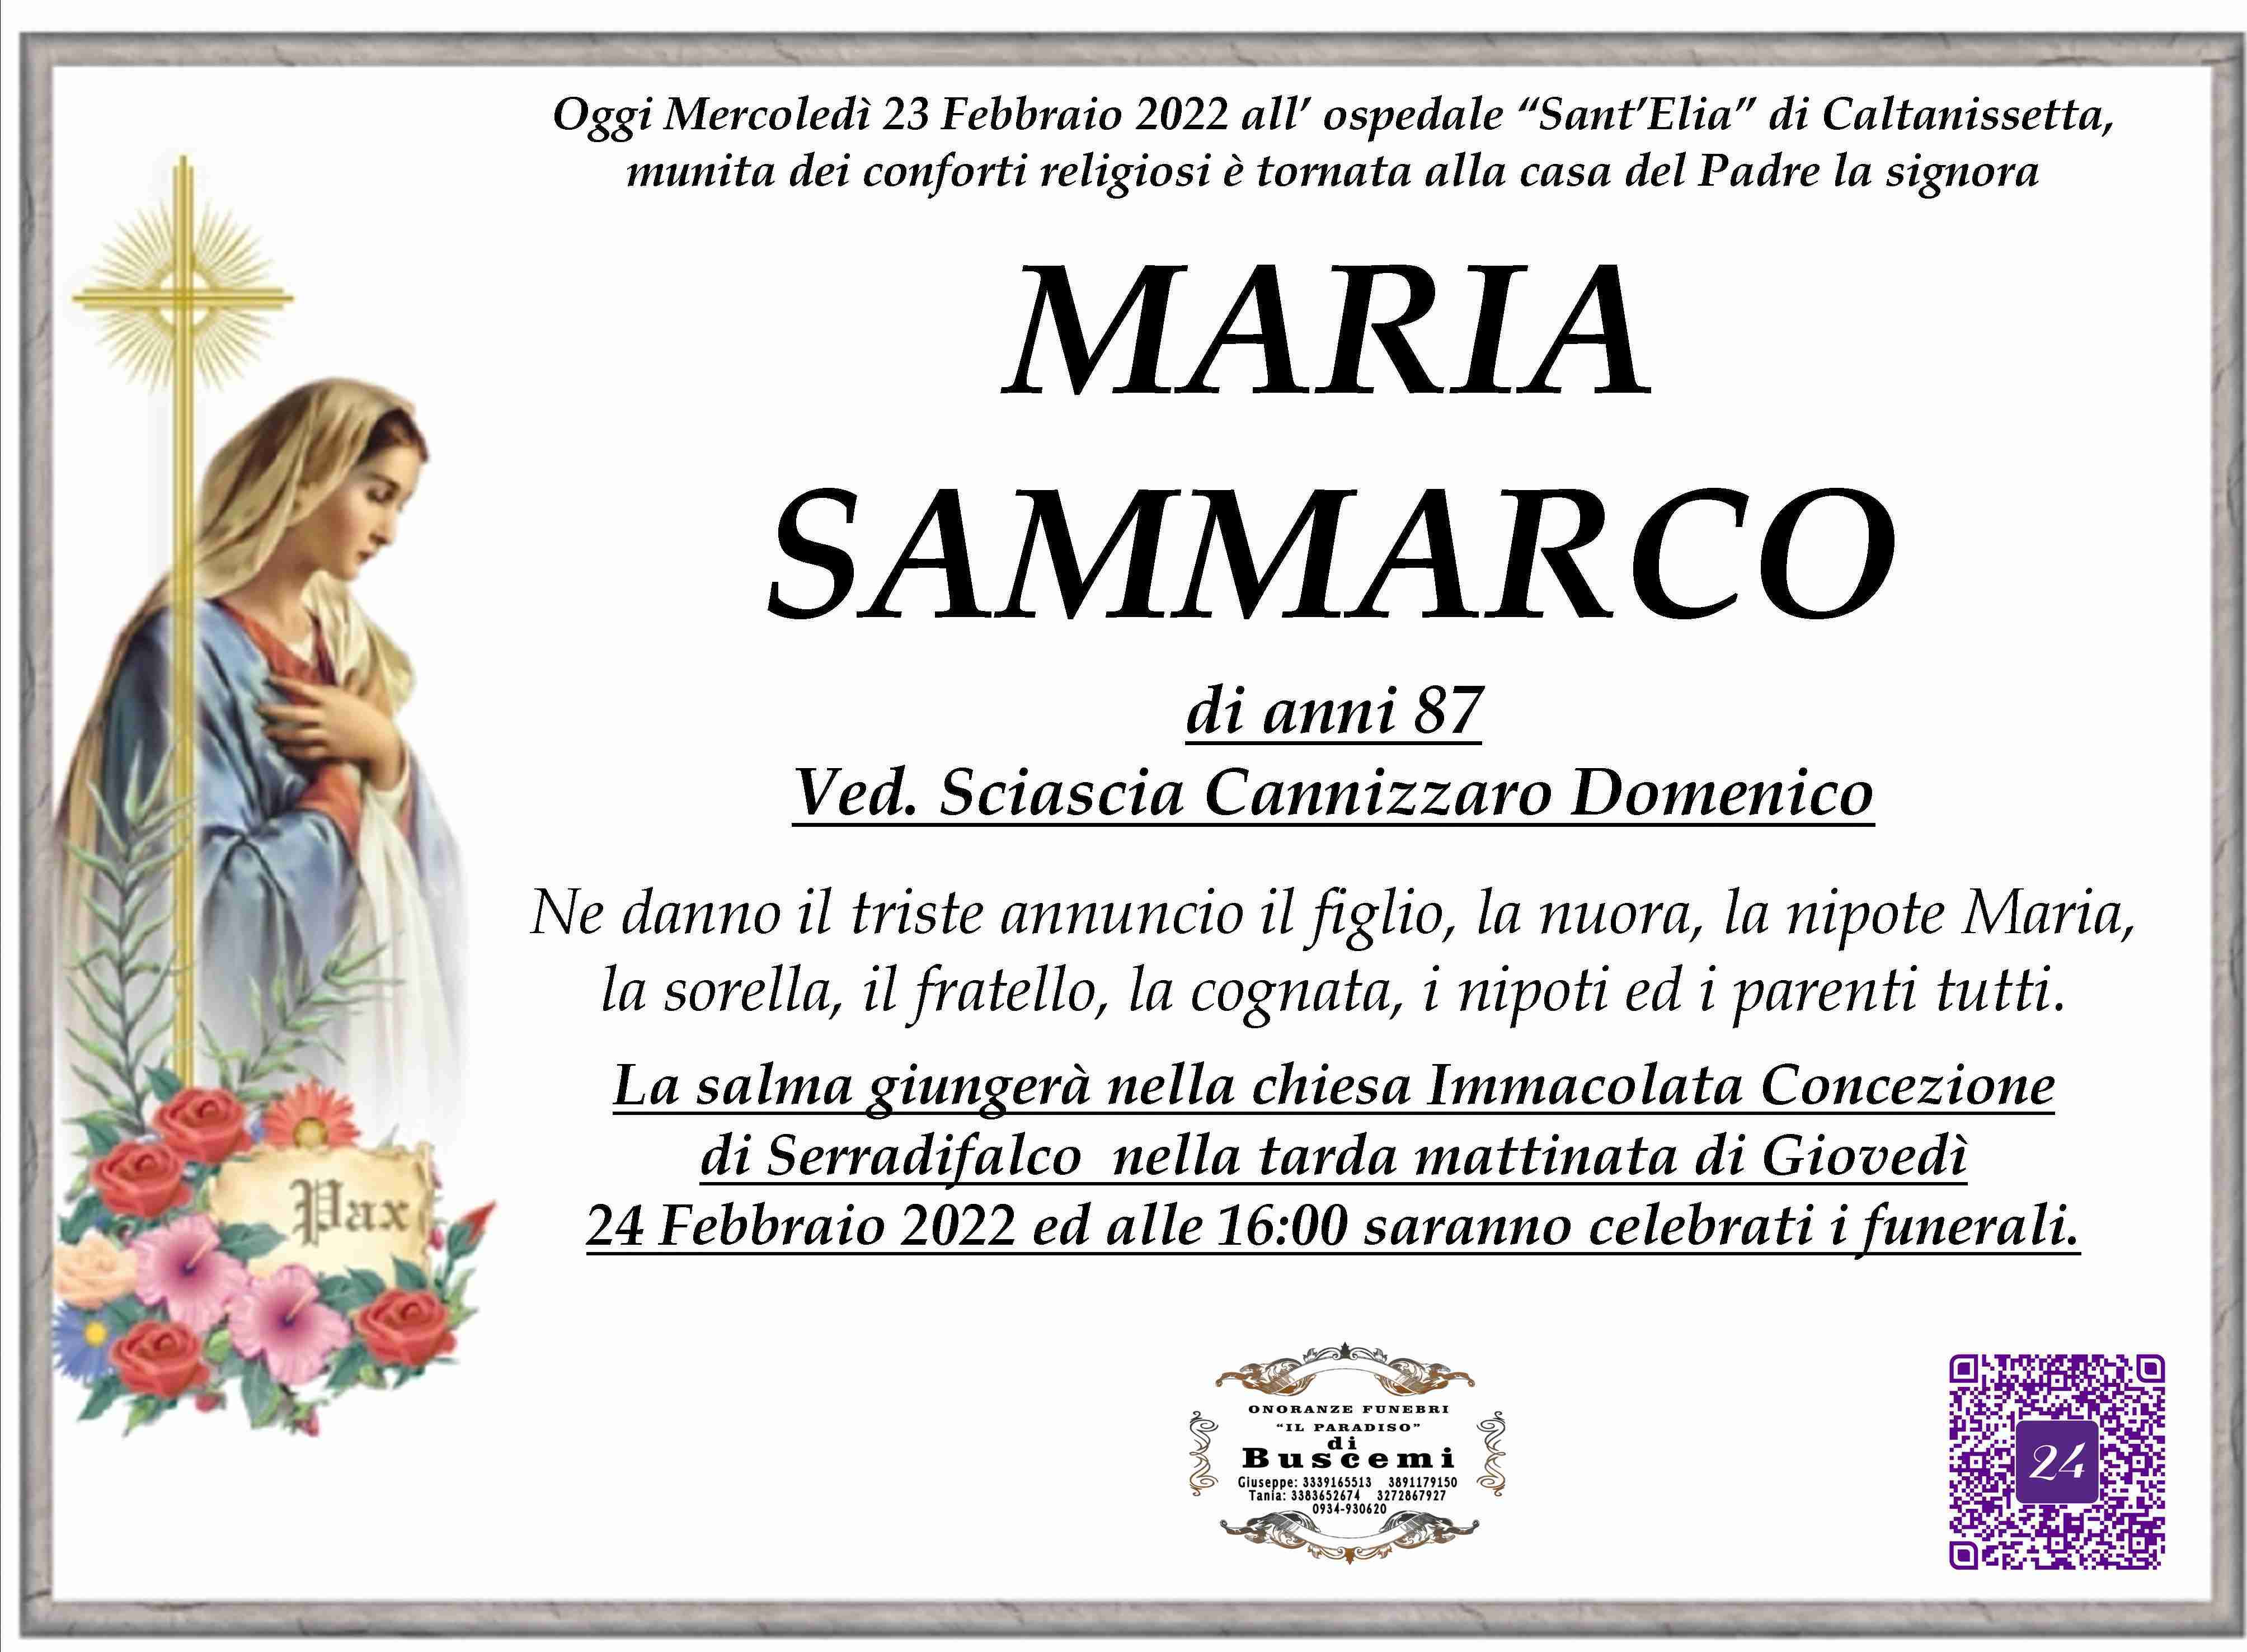 Maria Sammarco